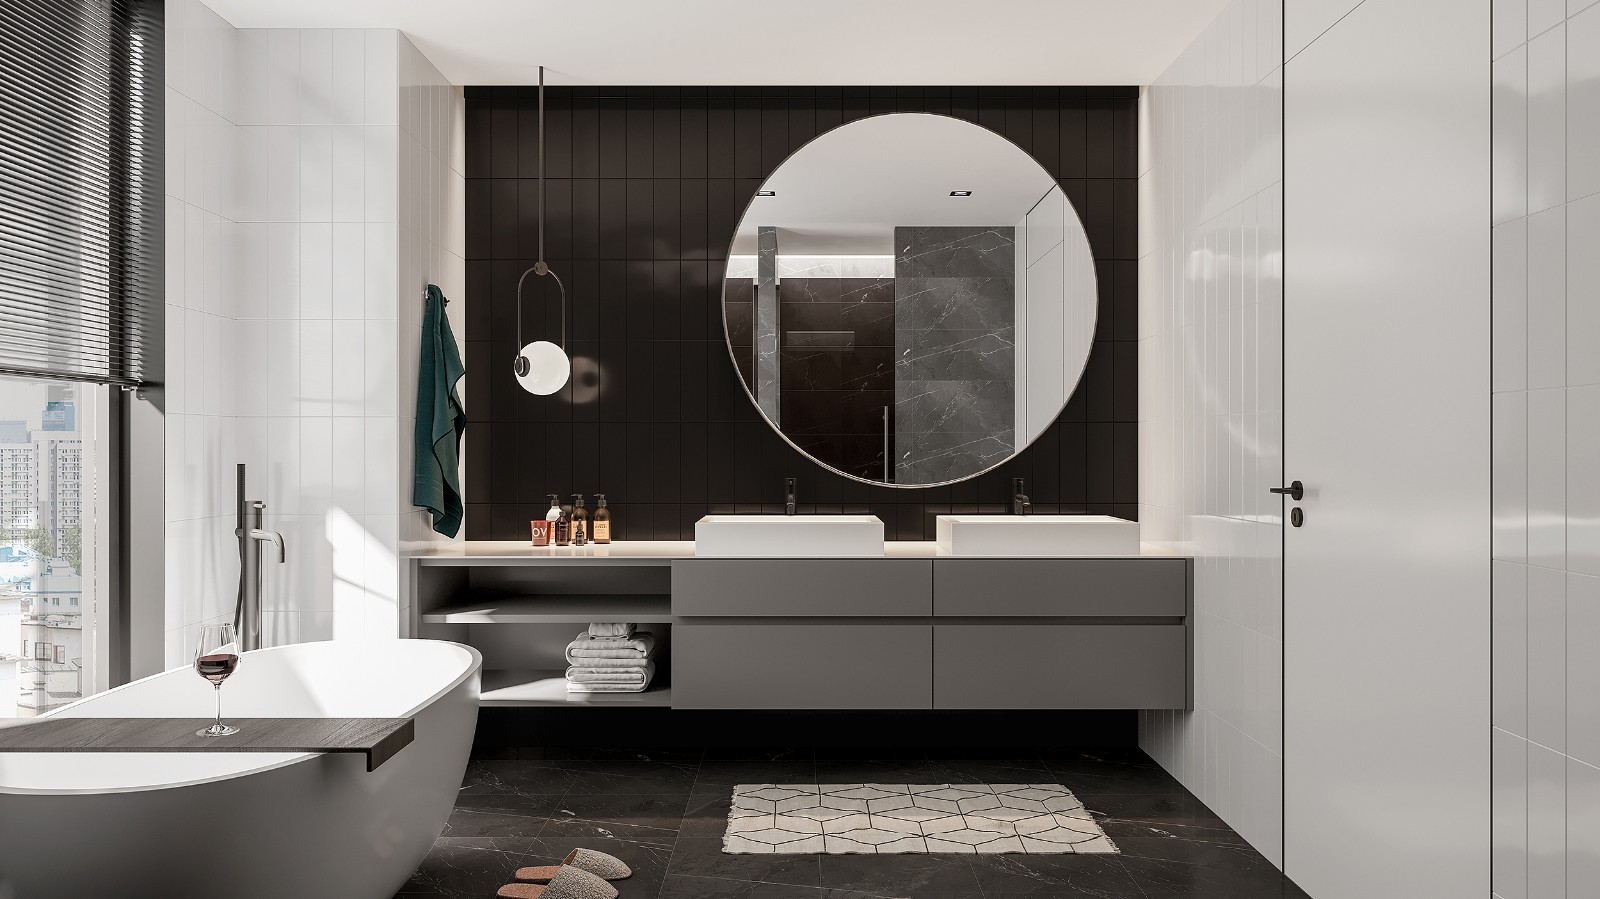 卫浴空间典雅柔和的配色令整个空间笼罩在温柔地气质中，洗手台设计错落有致。